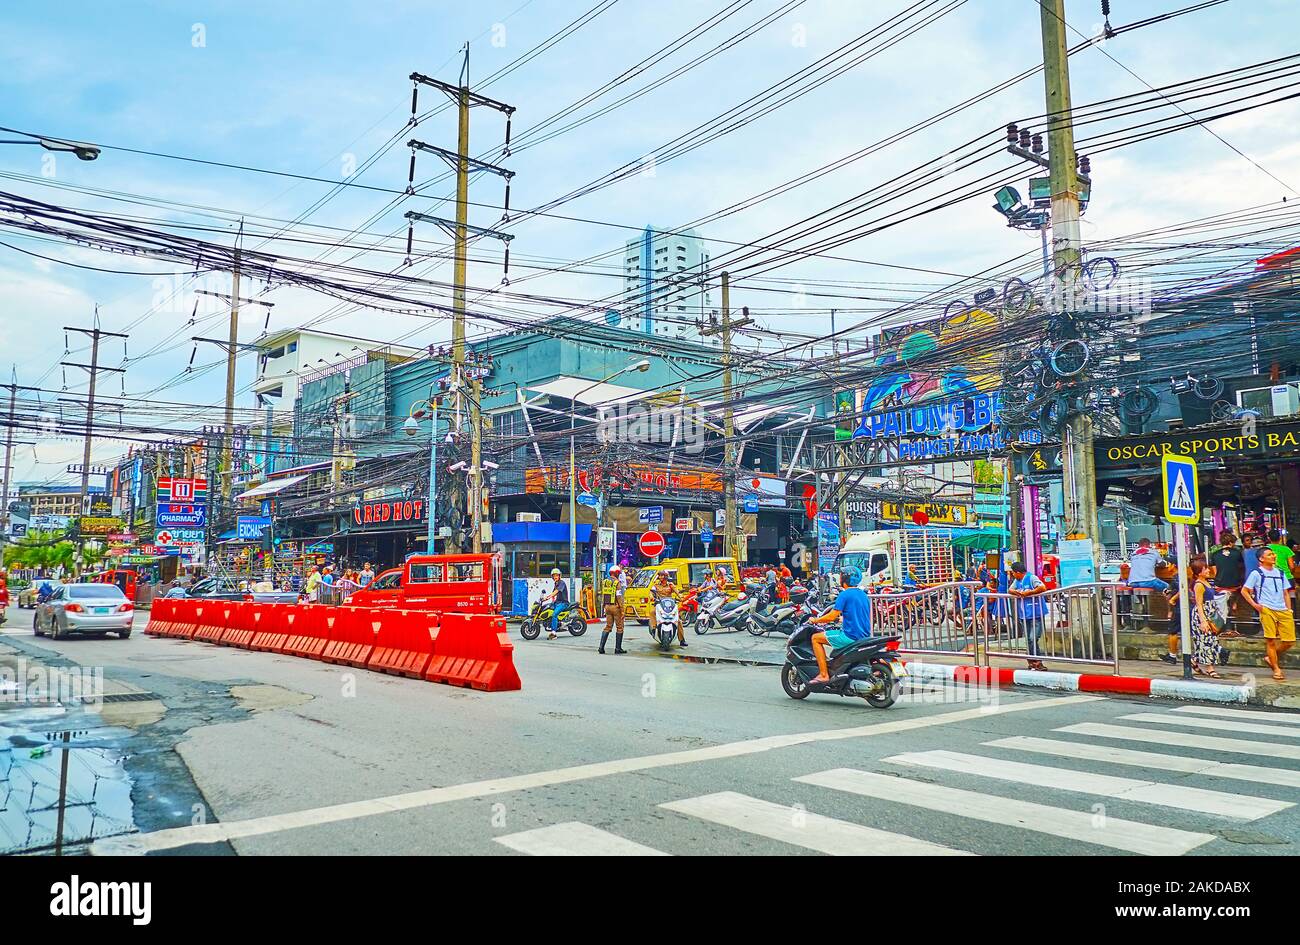 PATONG, Tailandia - 1 Maggio 2019: La scena urbana con una vista sulla strada rumorosa e piena di luoghi di interesse turistico, bar, night club, negozi e labirinto di wi elettrico Foto Stock